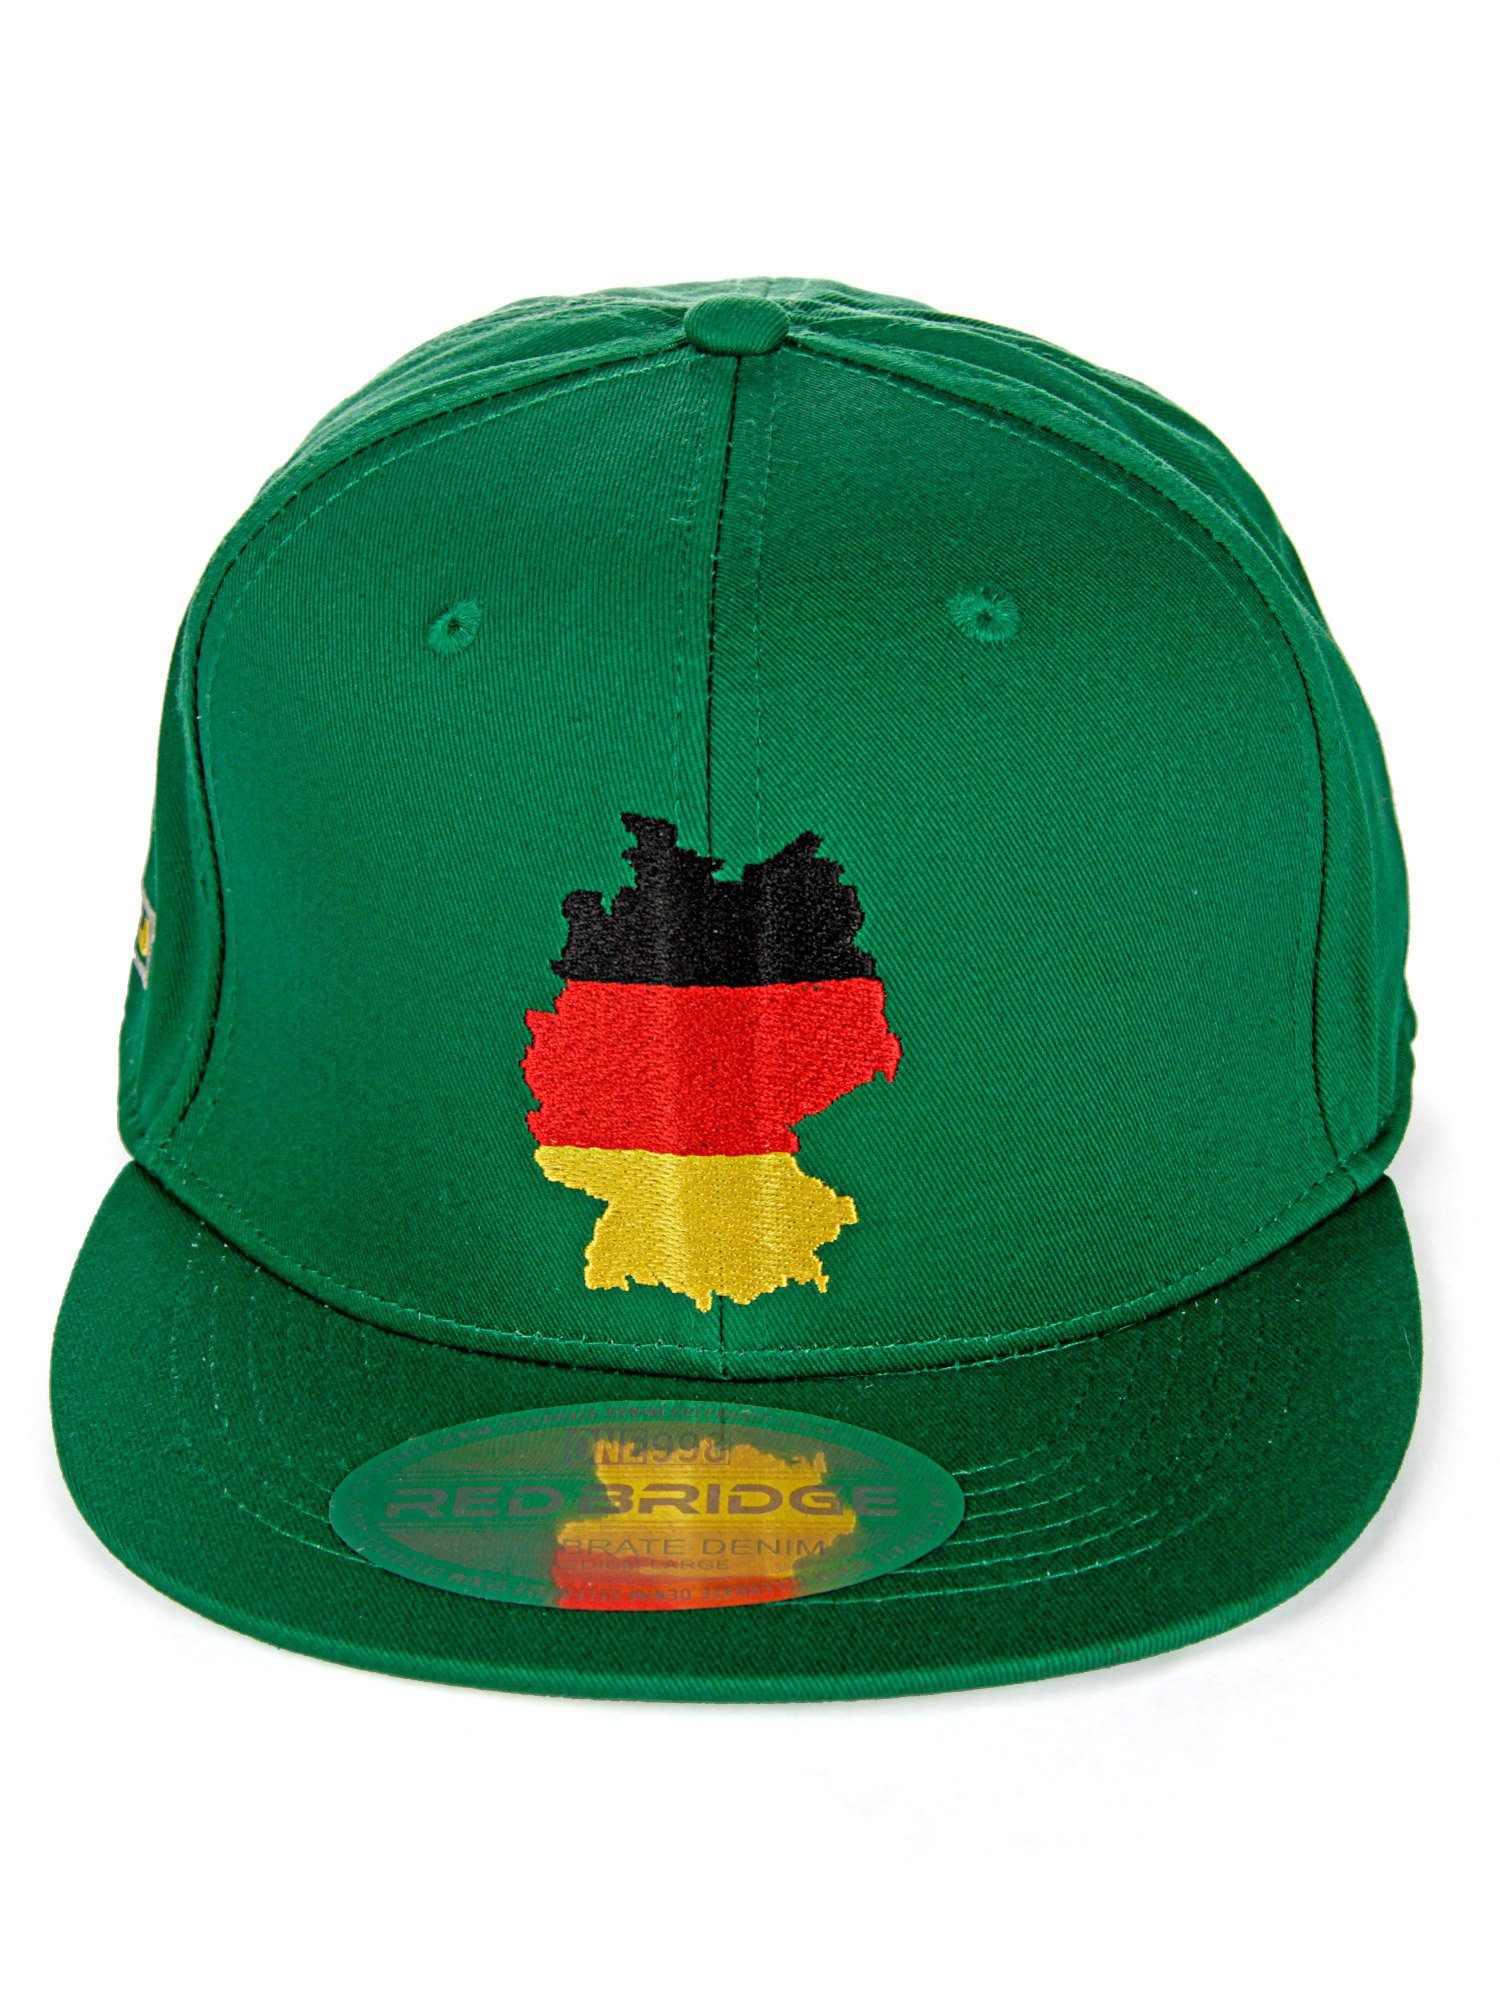 grün Shoreham Baseball RedBridge trendiger Cap mit Deutschland-Stickerei